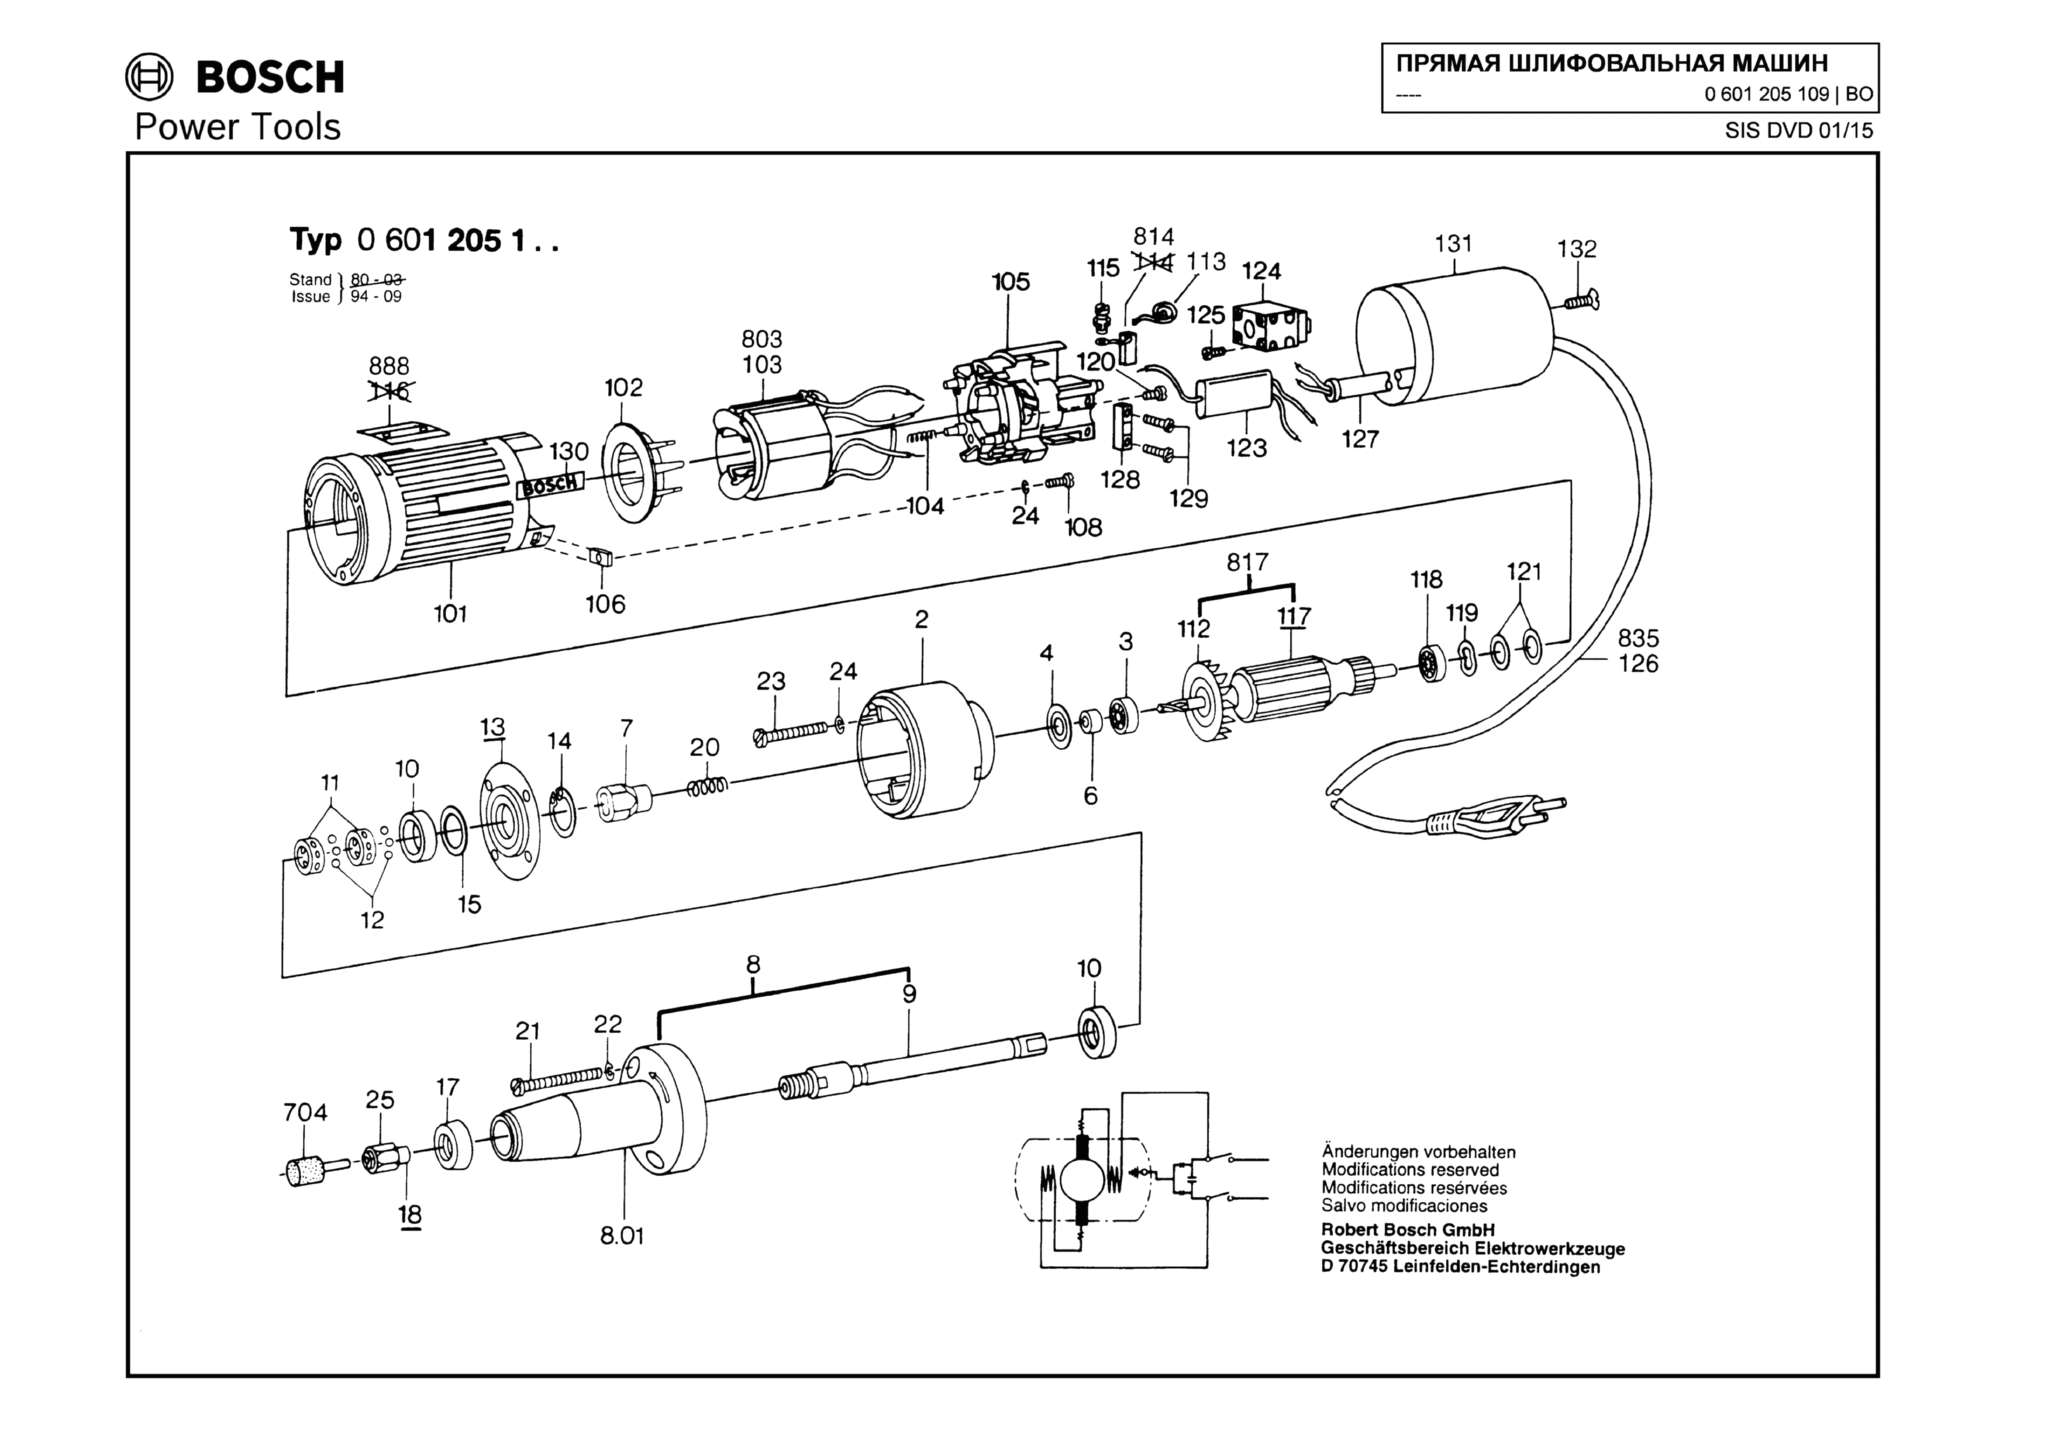 Запчасти, схема и деталировка Bosch (ТИП 0601205109)